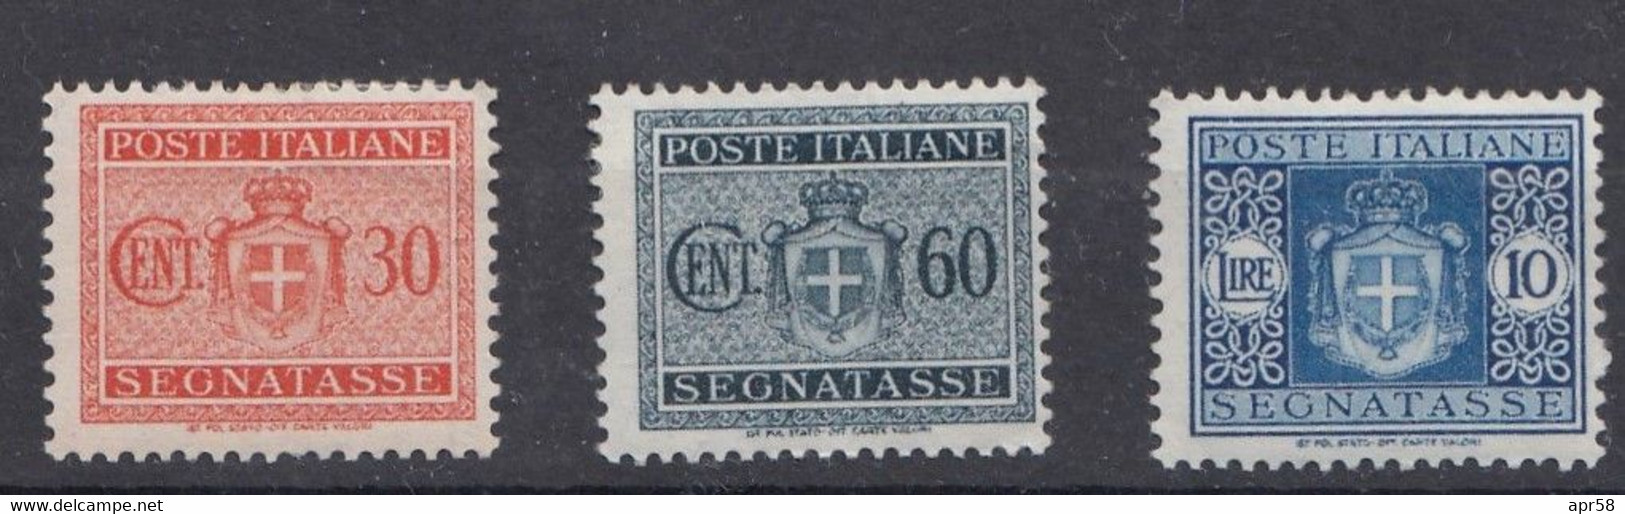 1945 Segnatasse    Sass77-30c-sass-80-60c-sass84-10li - Taxe